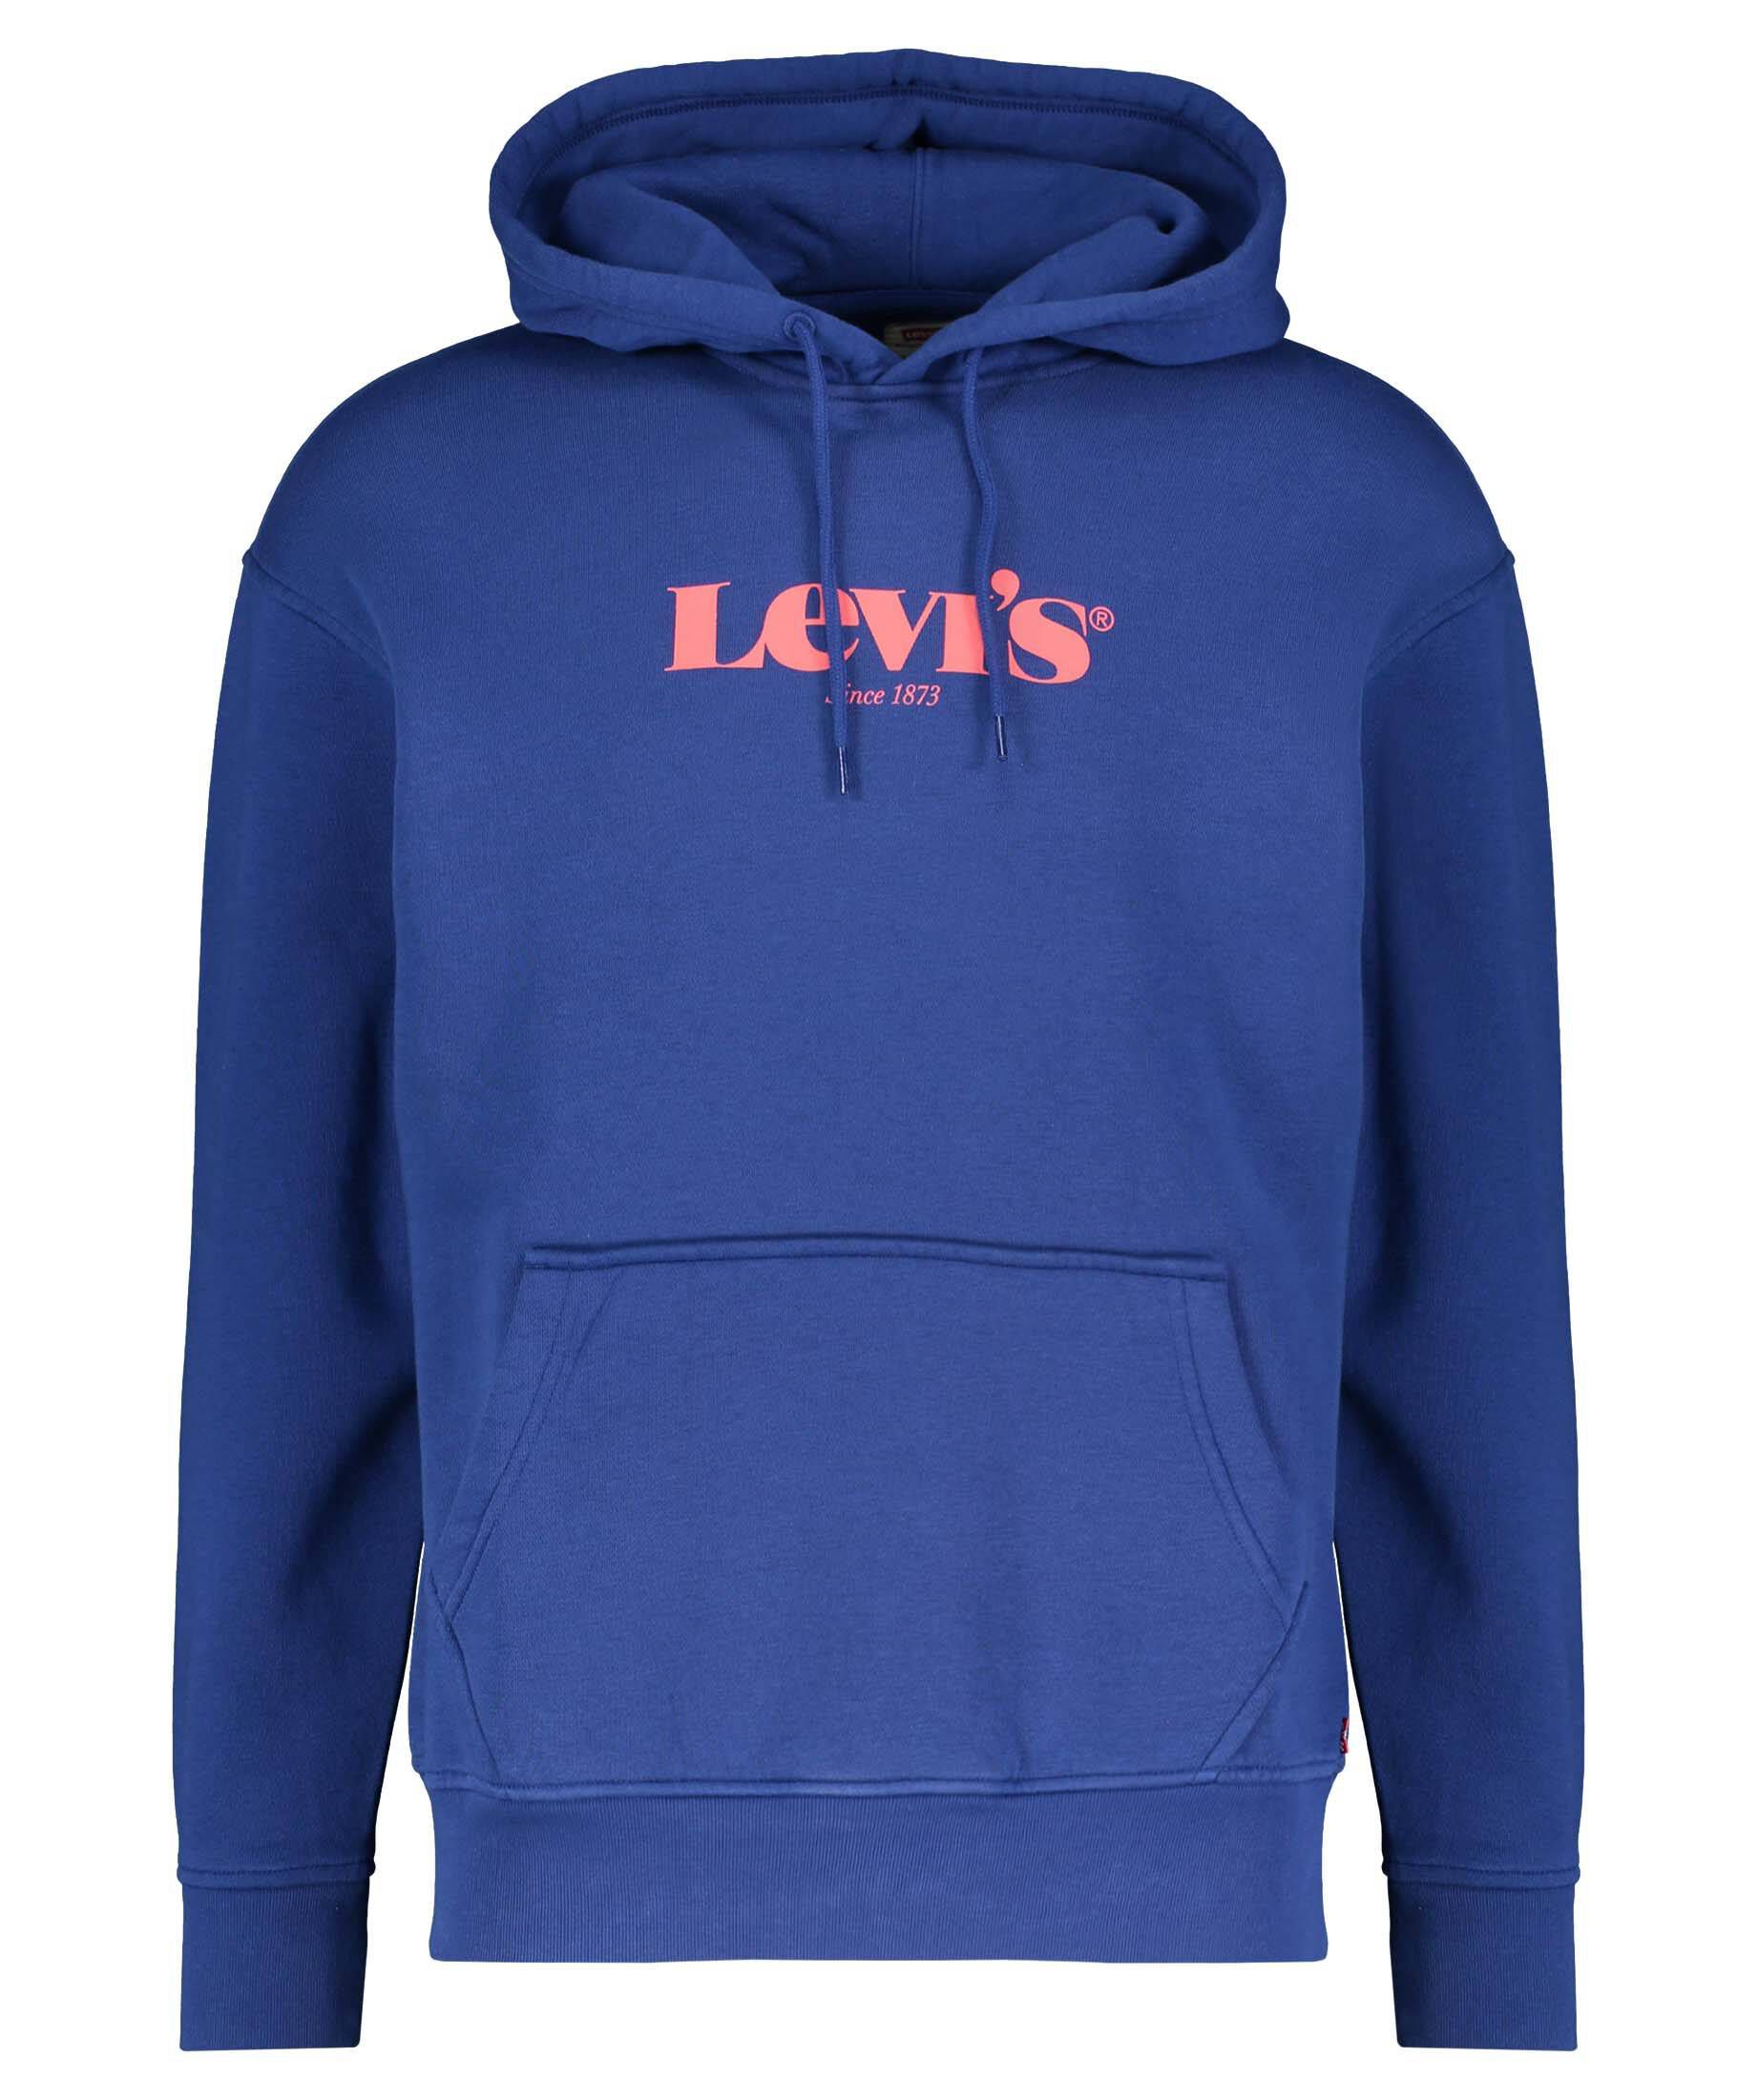 Dunkelblau M Rabatt 49 % Levi's sweatshirt HERREN Pullovers & Sweatshirts Hoodie 